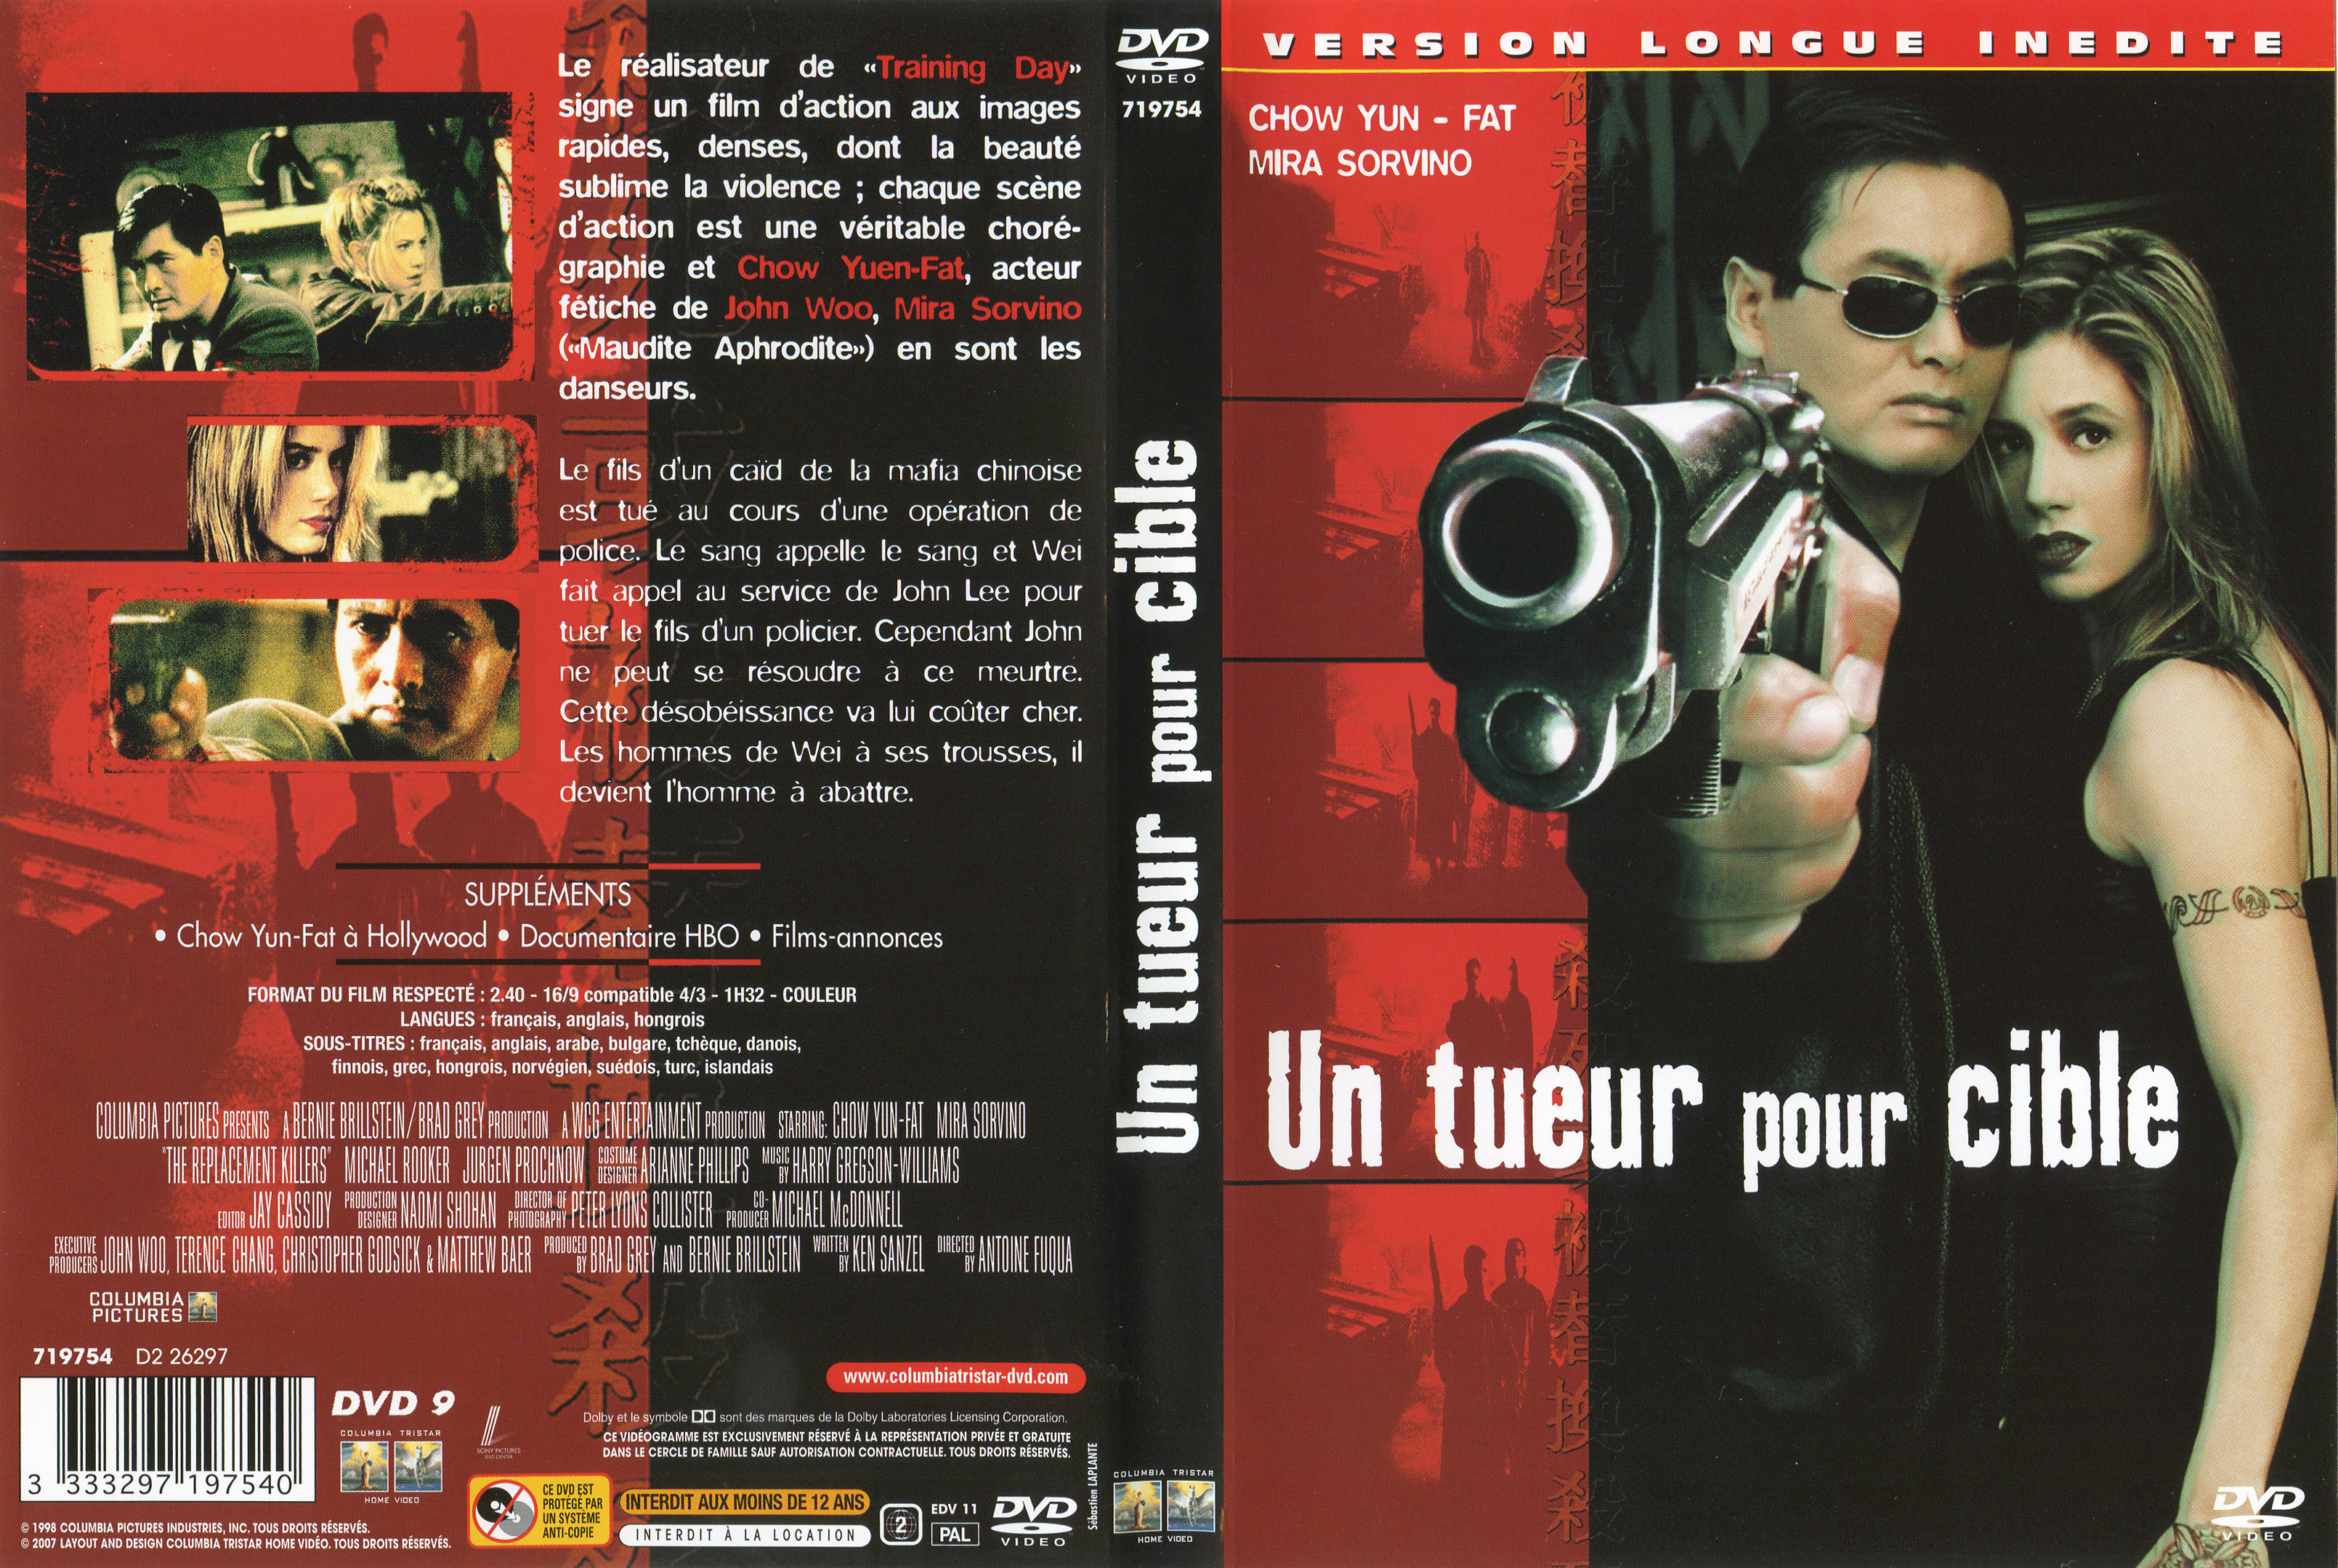 Jaquette DVD Un tueur pour cible